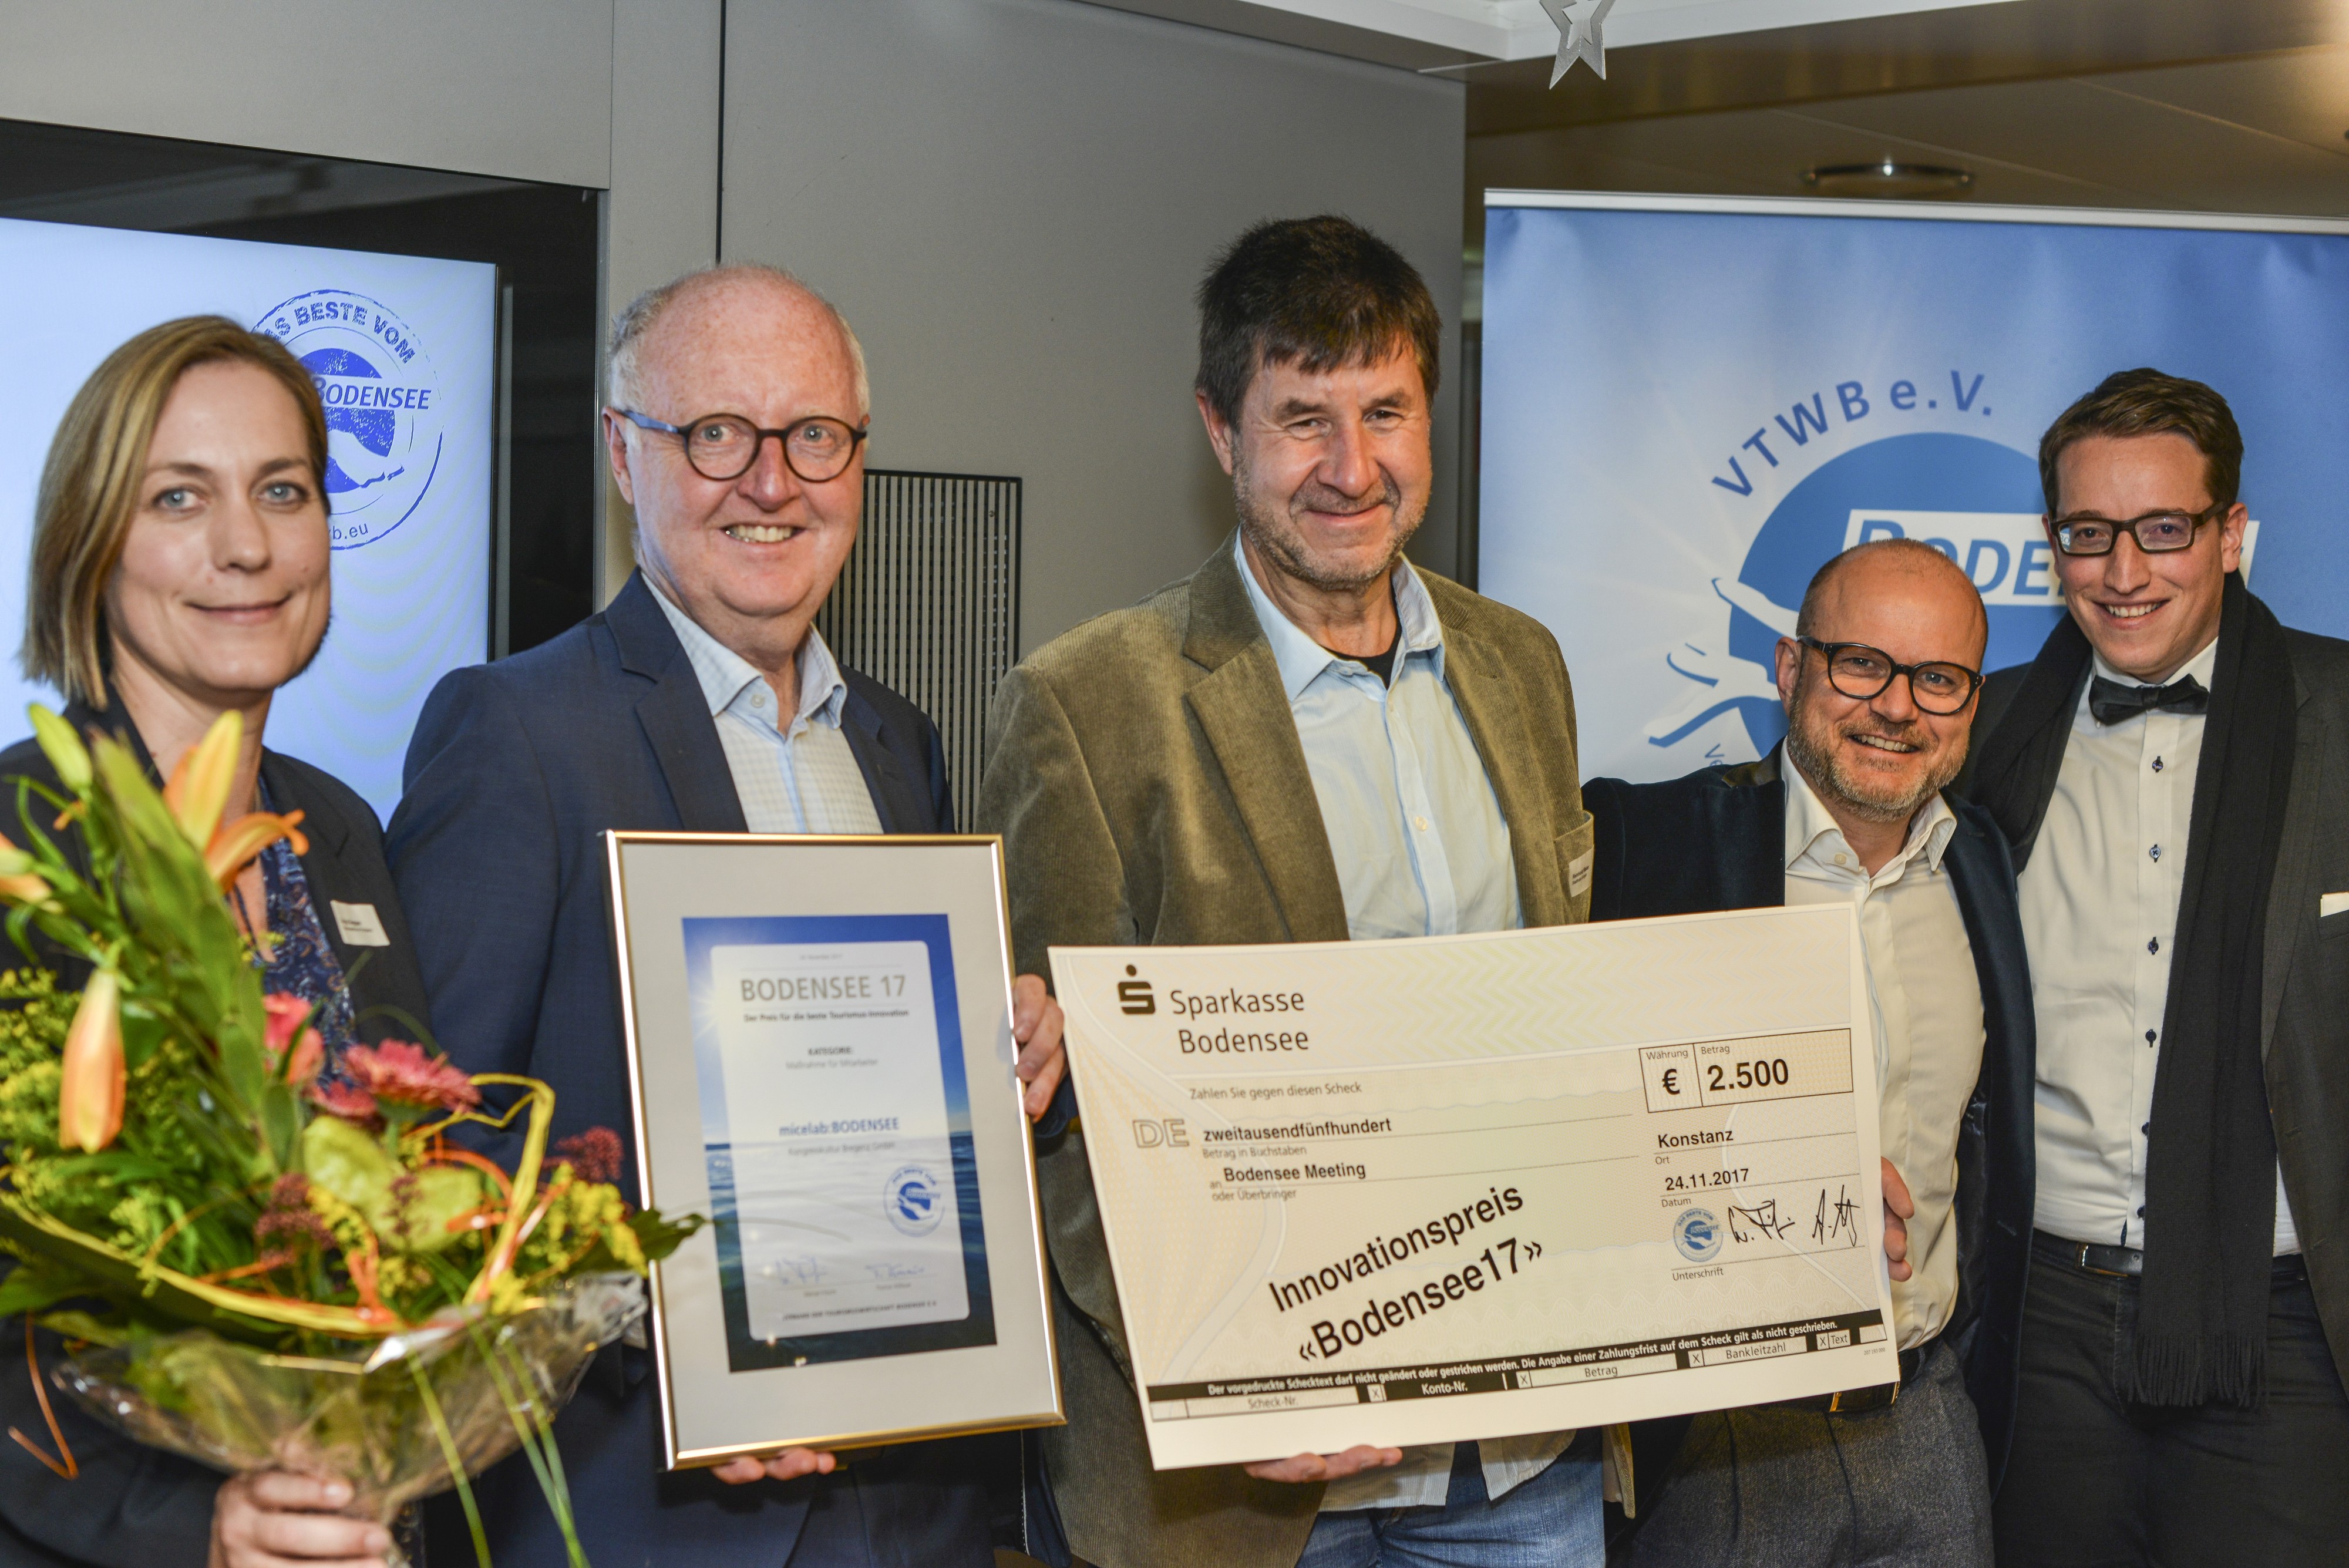  micelab:bodensee gewinnt Innovationspreis Bodensee17